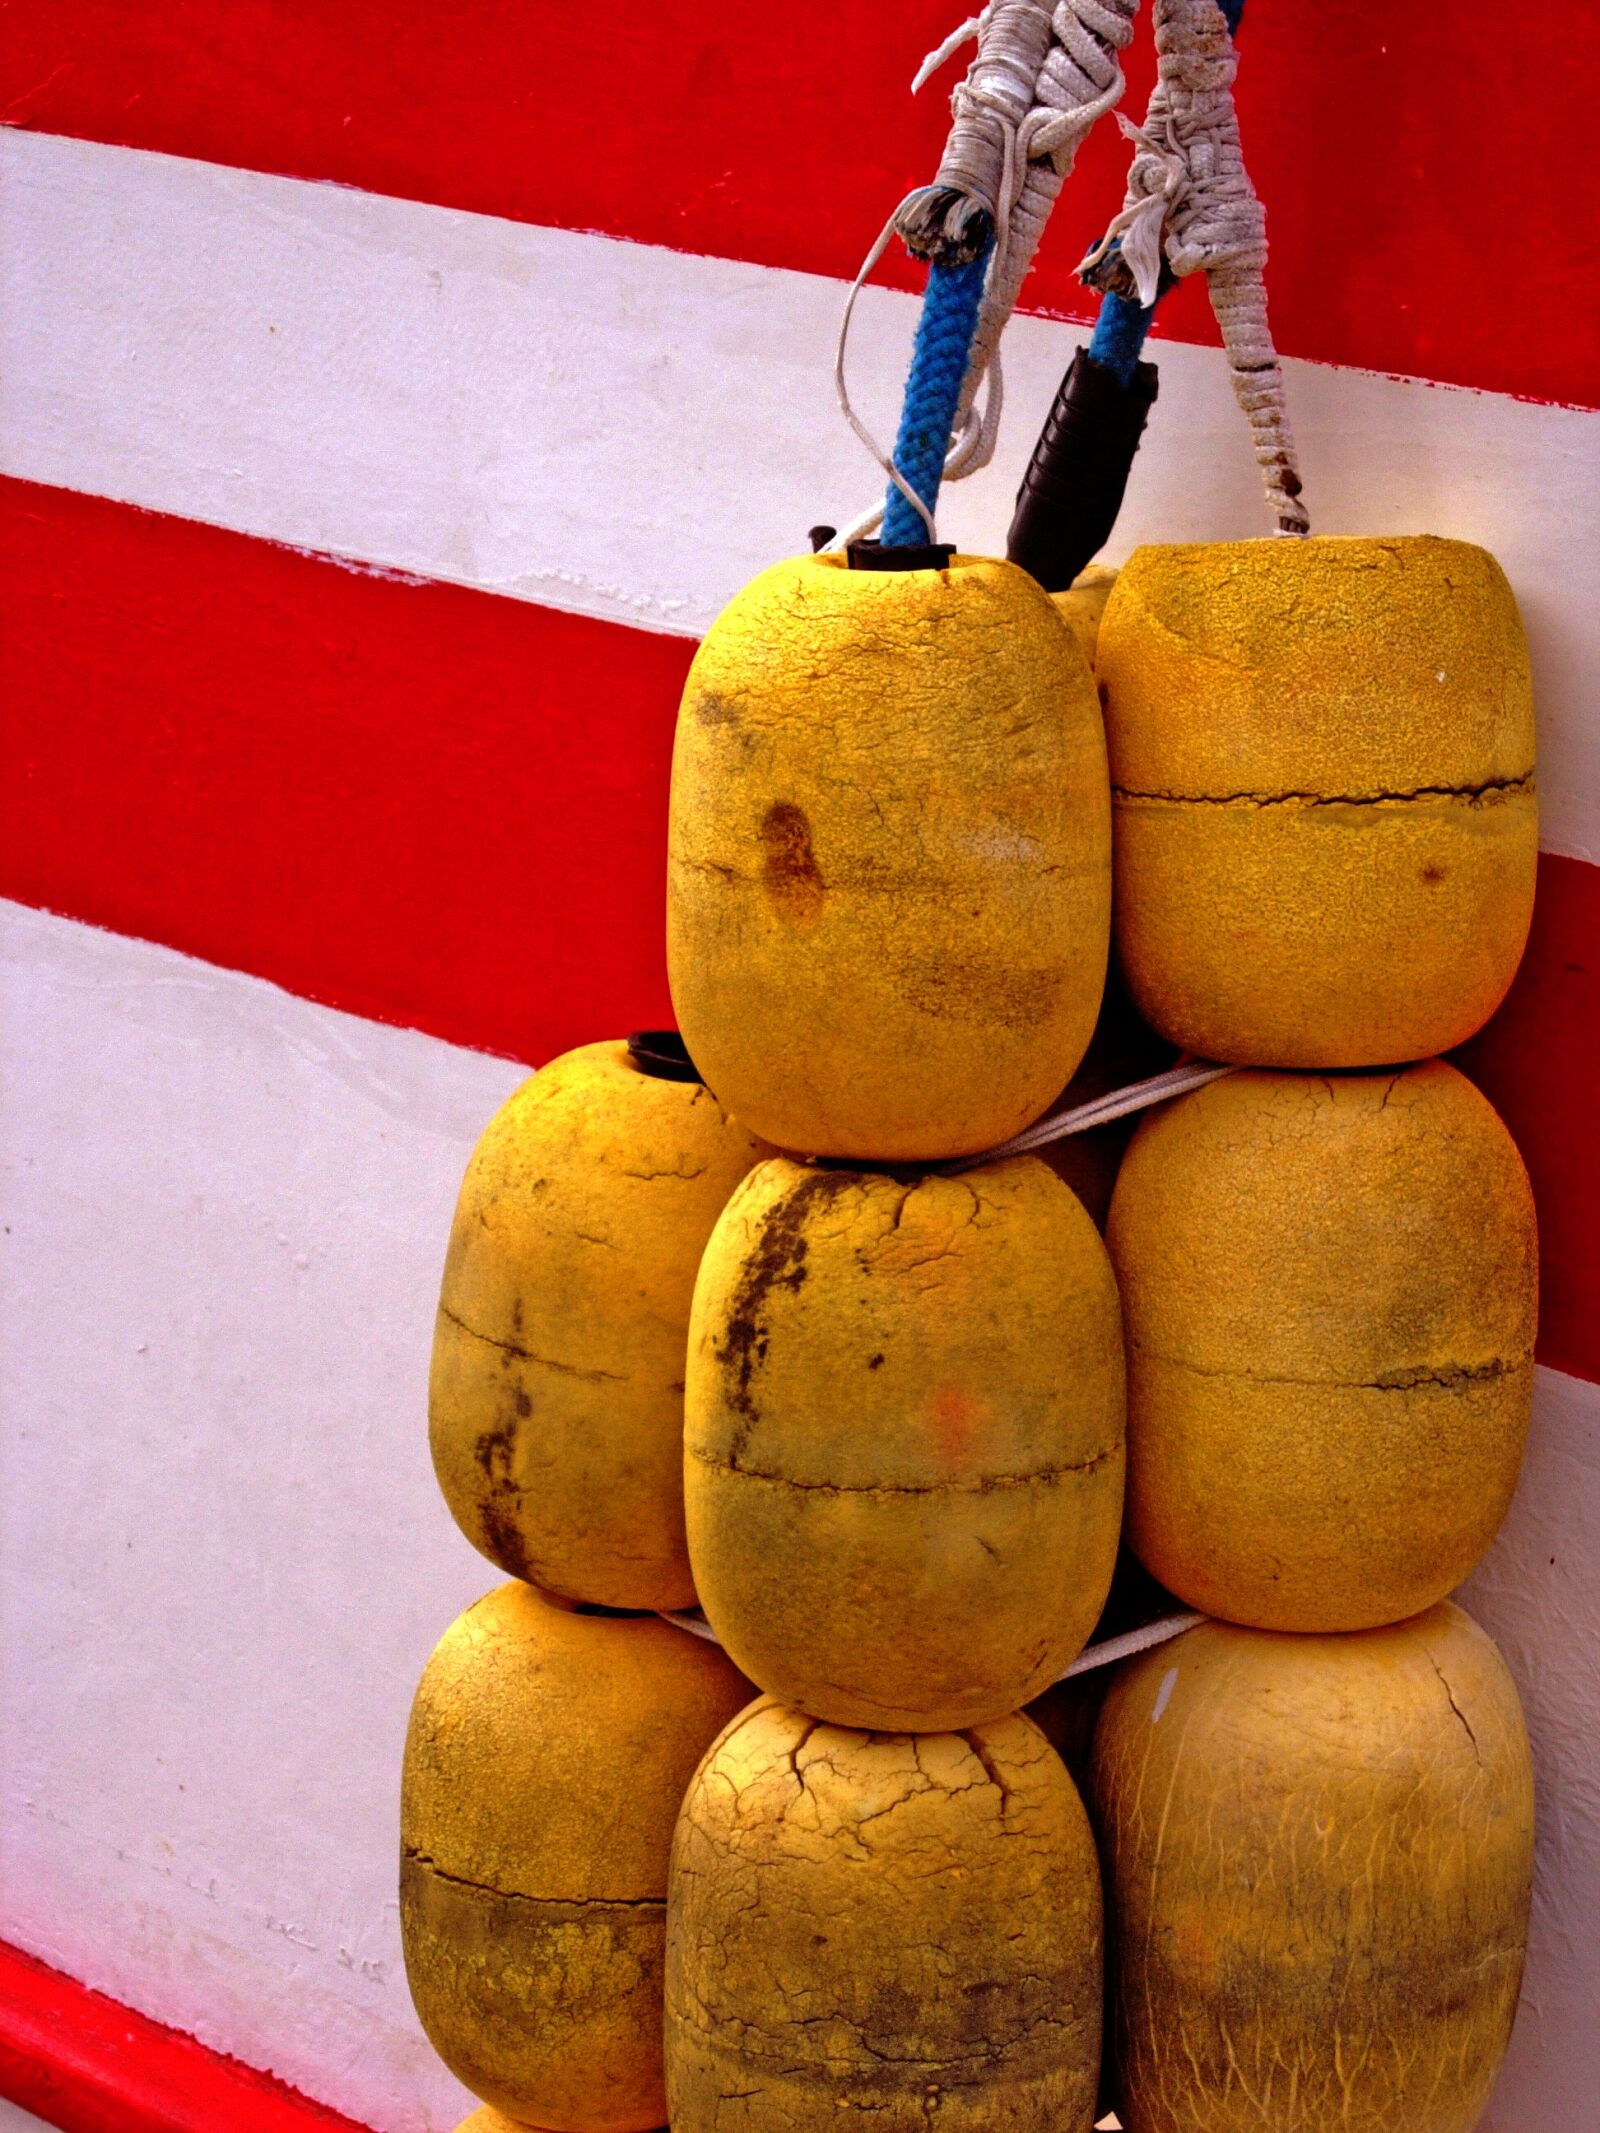 Nikon E5200 sample photo. Boat buoys, buoy, maritime photography